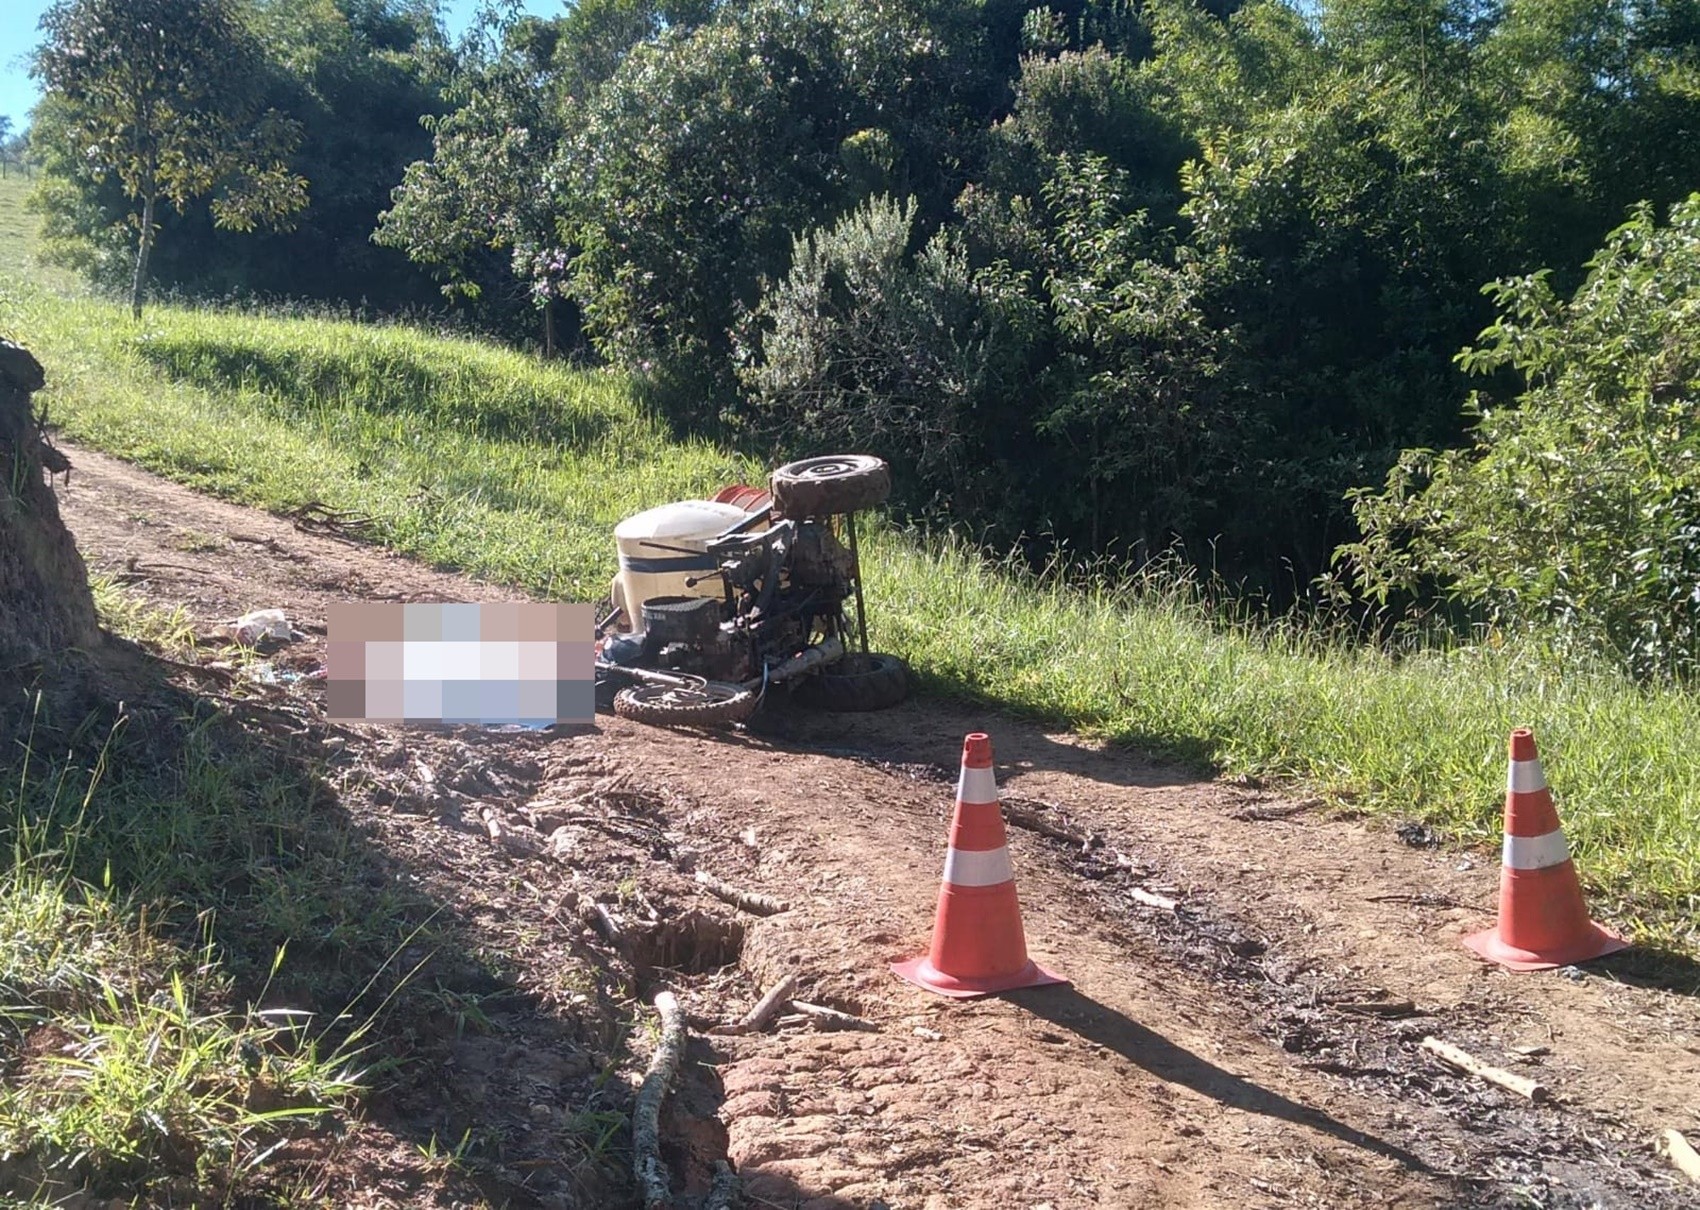 Homem de 23 anos morre após moto adaptada capotar na zona rural de Delfim Moreira, MG